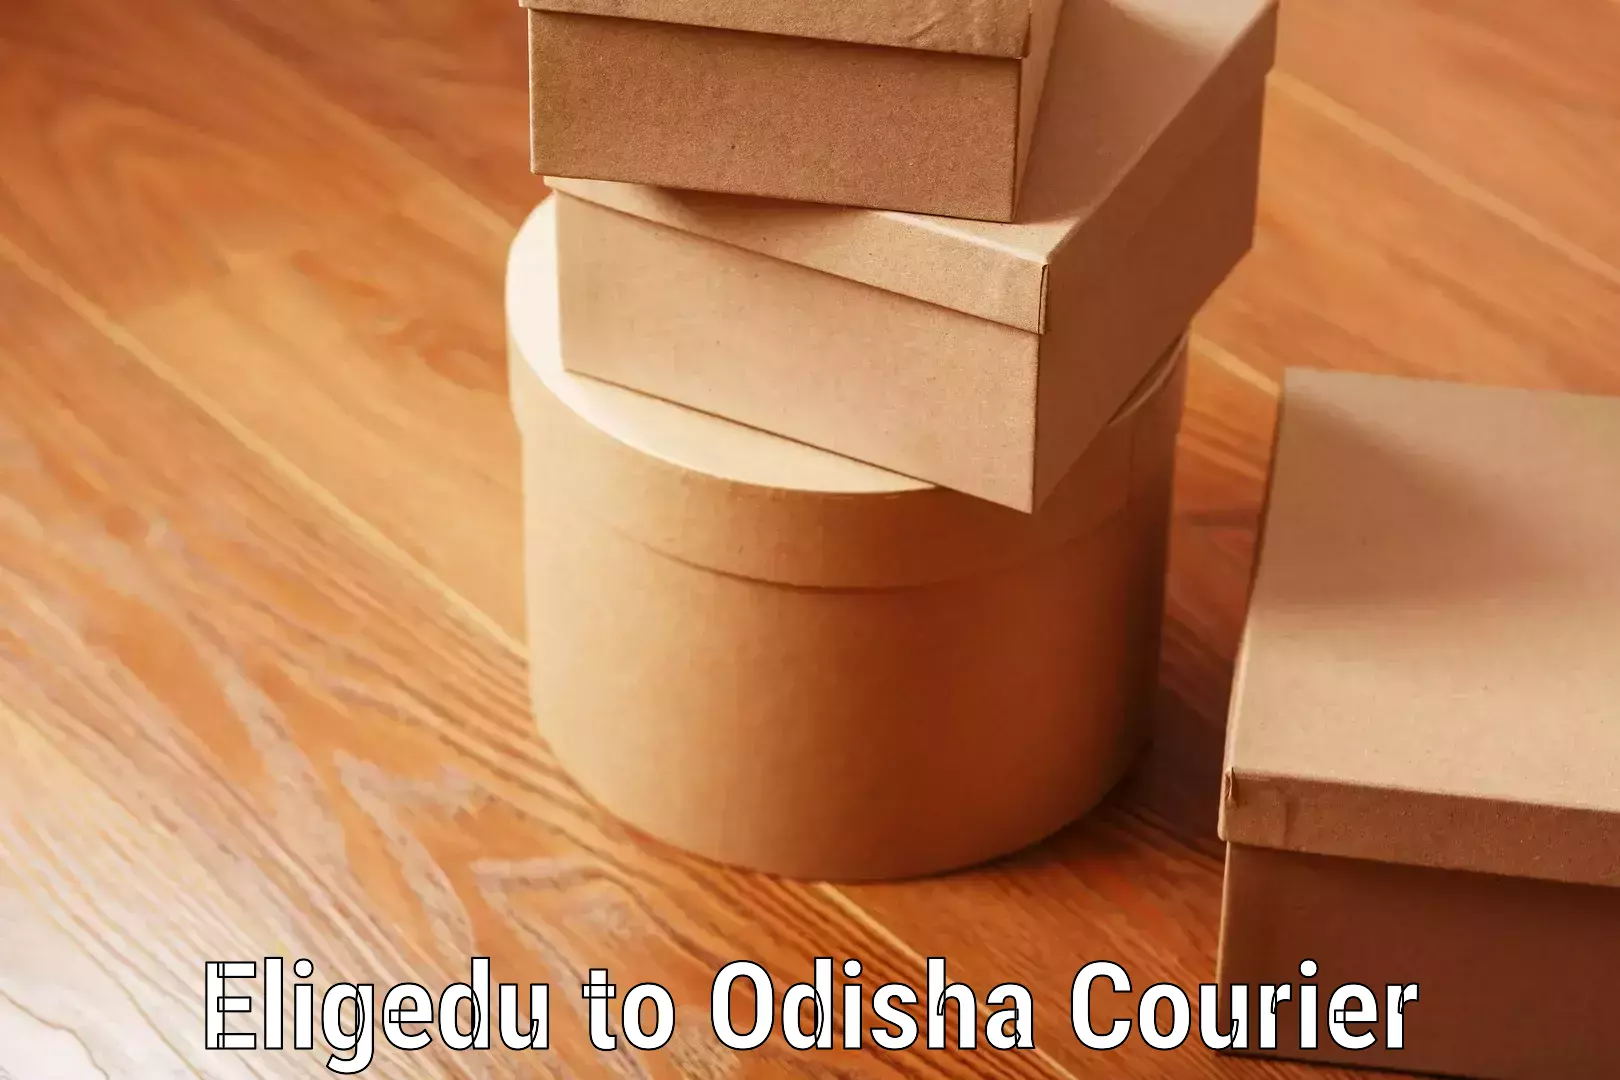 Luggage shipment tracking in Eligedu to Odisha